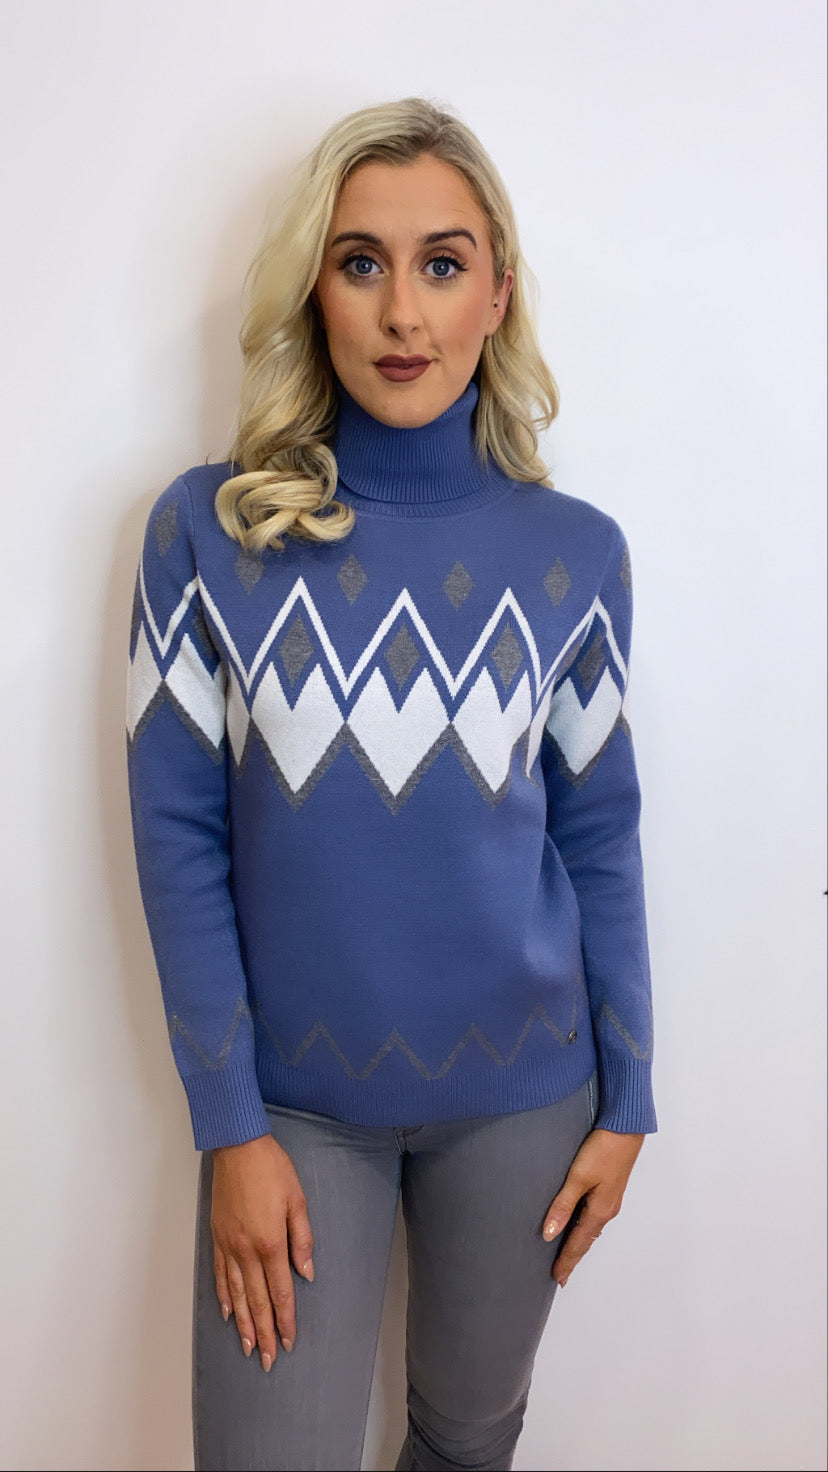 Cammello avion blue knit jumper